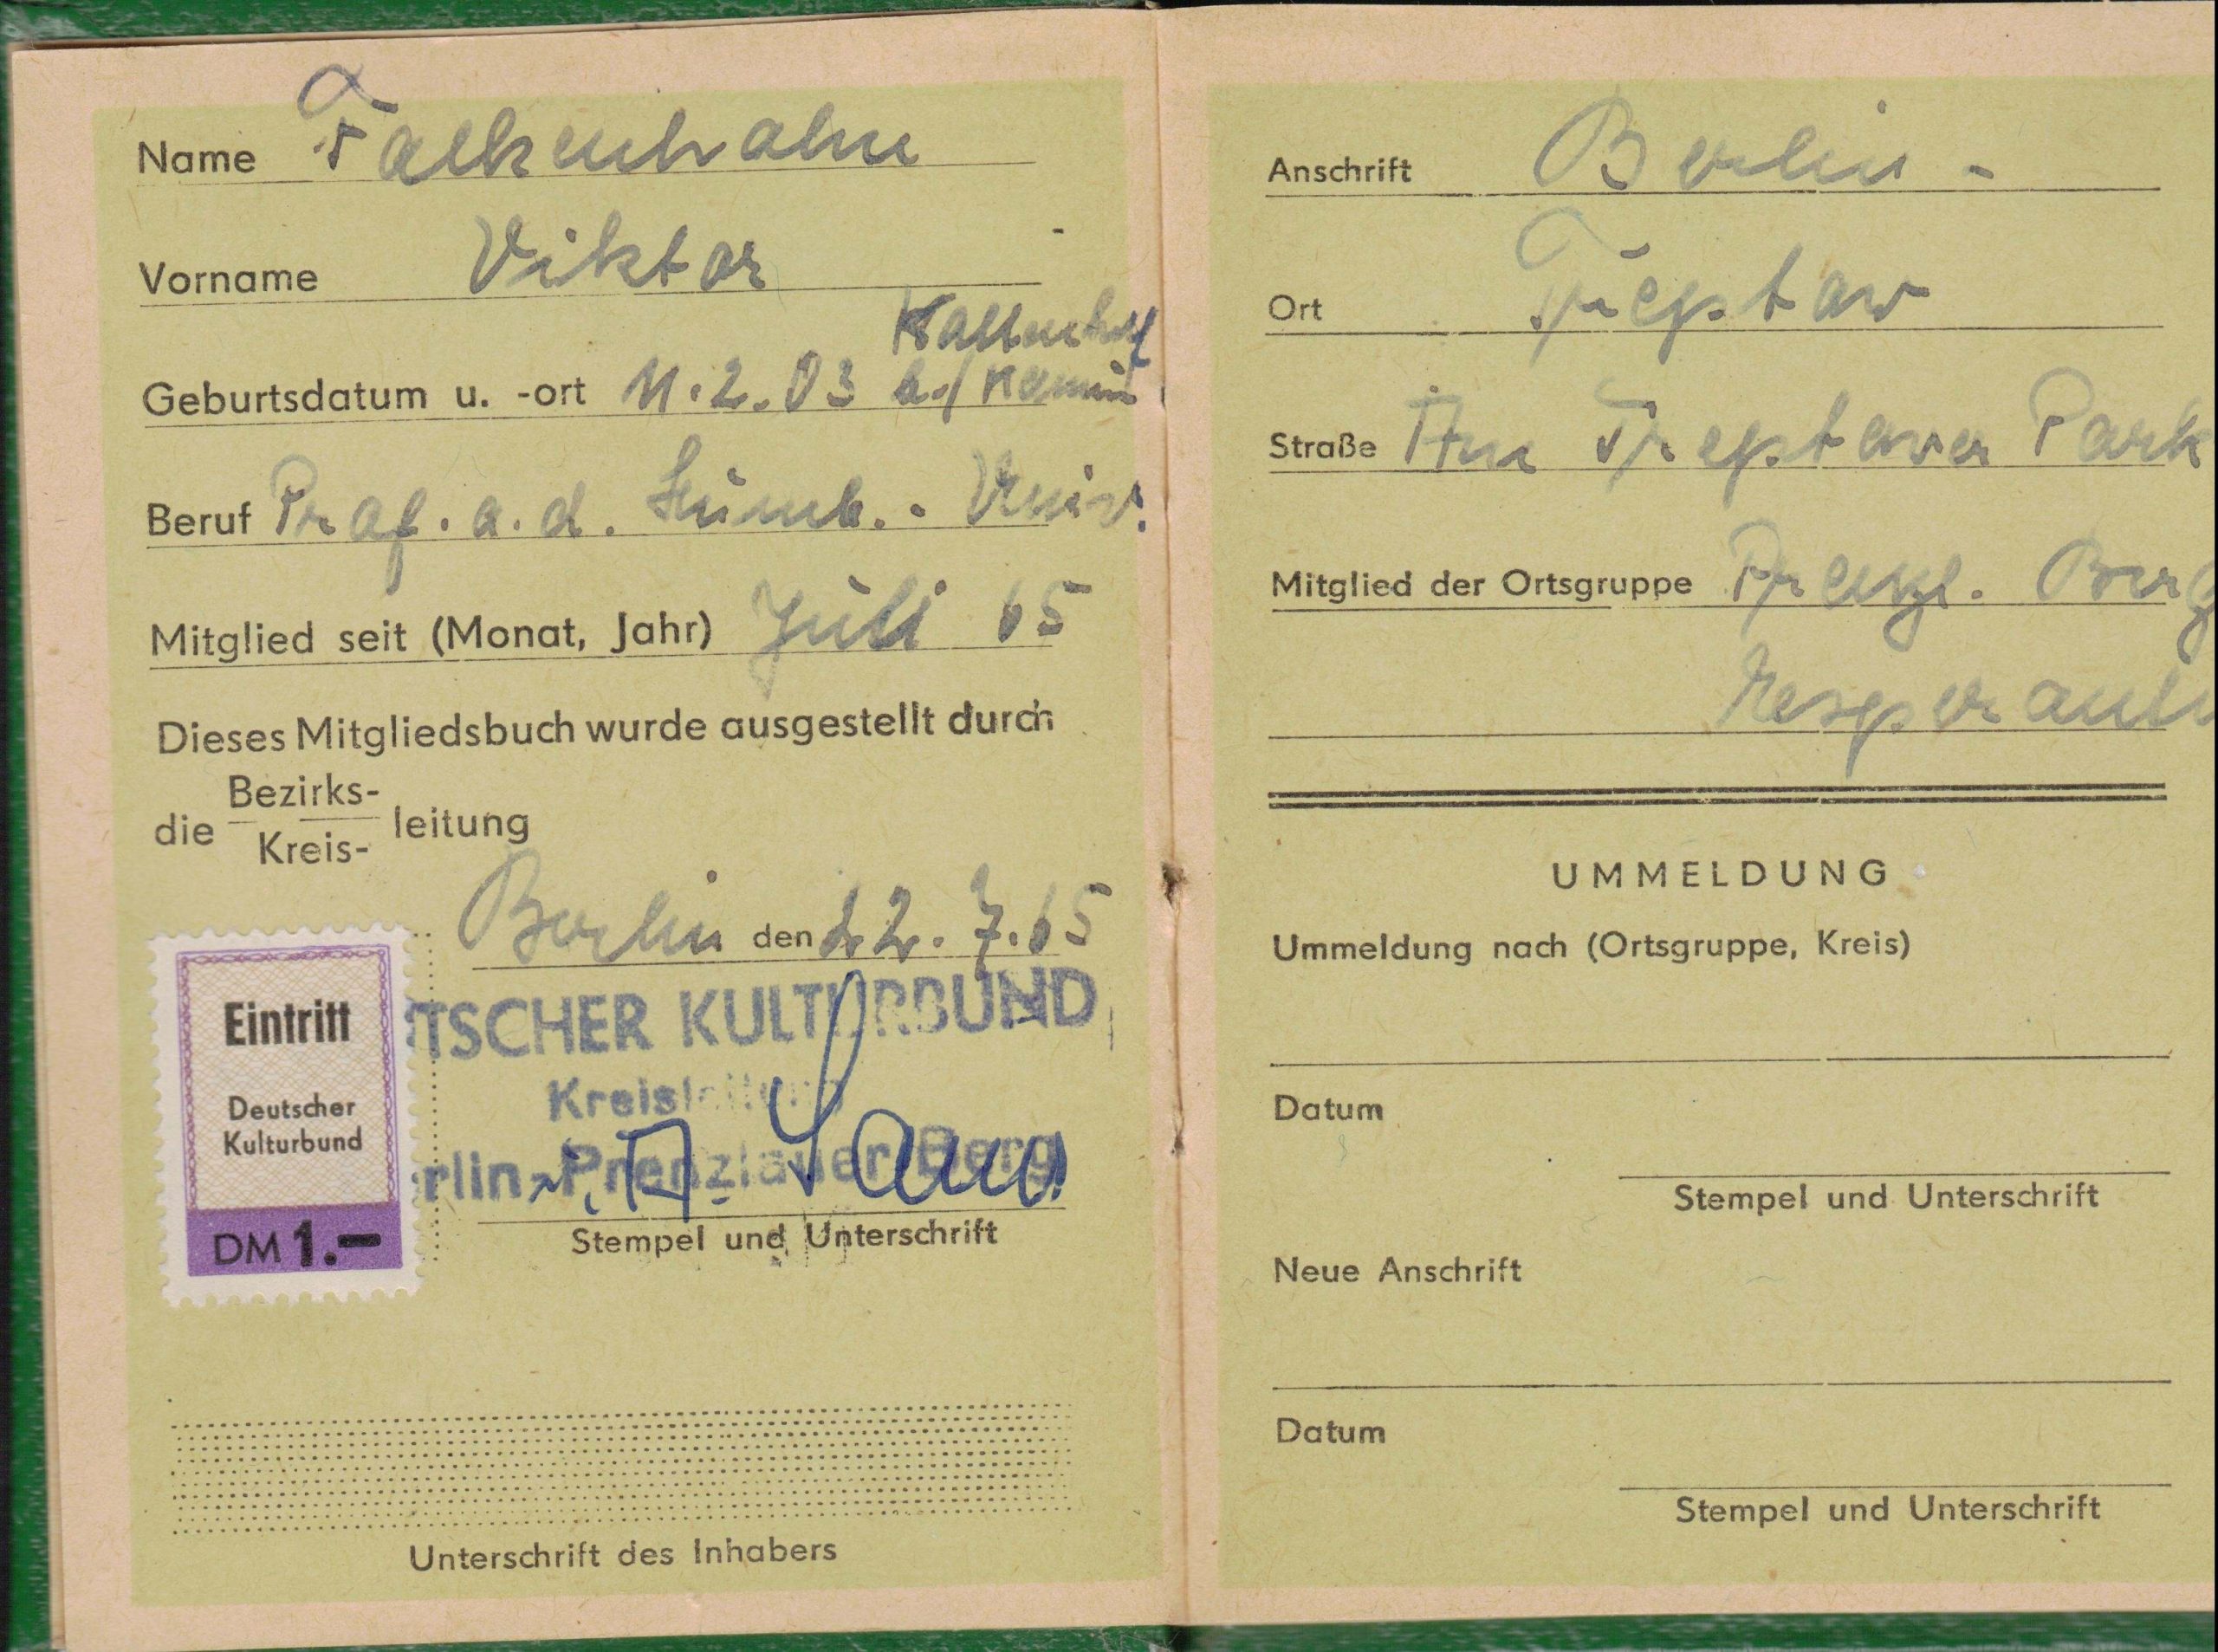 Vokietijos kultūros lygos nario pažymėjimas Nr. 230866, išduotas Berlyne 1965 m. liepos 22 d. MLLM P26698